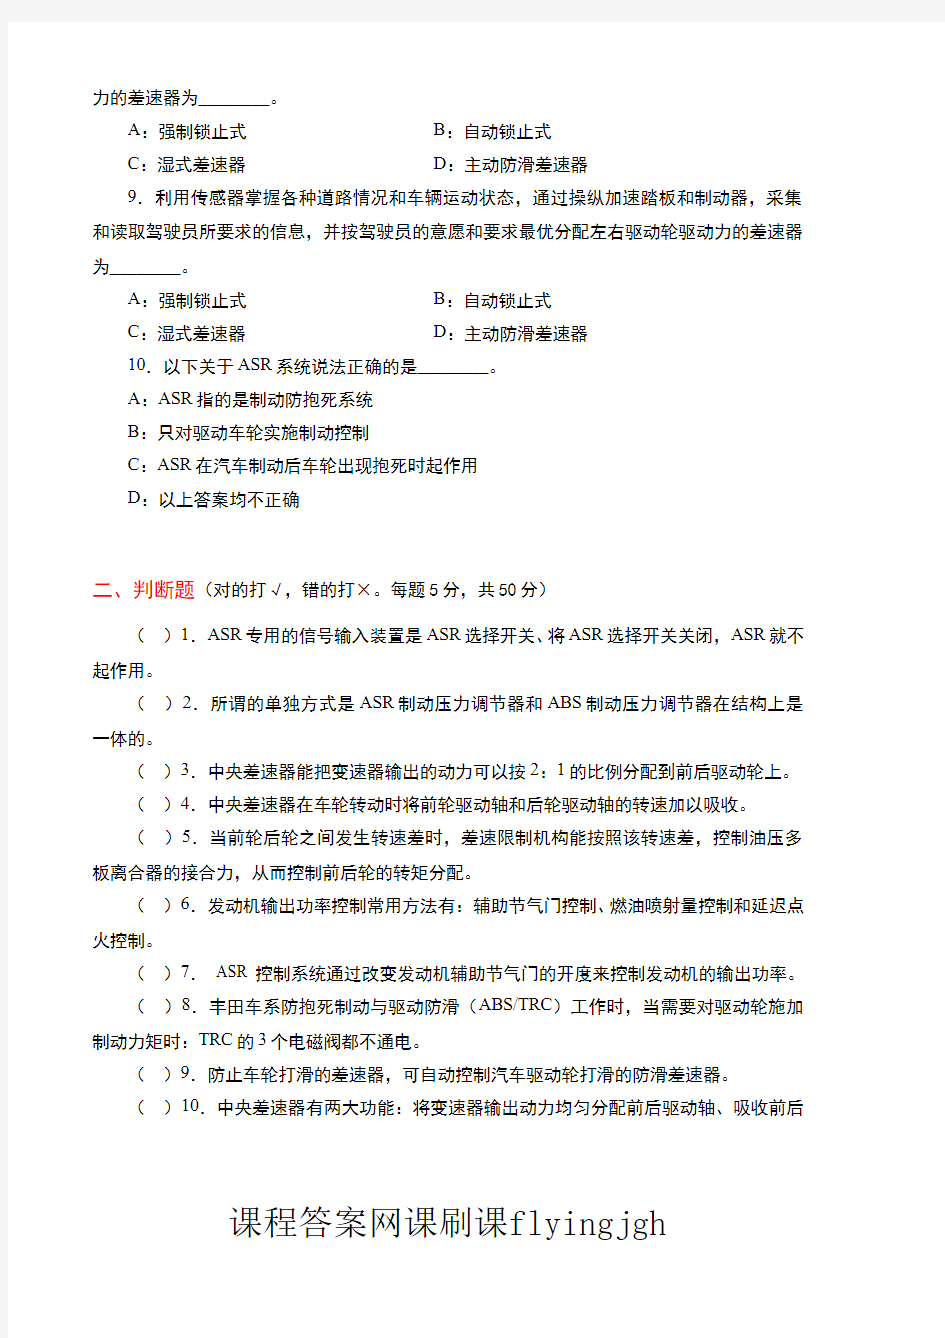 中国大学MOOC慕课爱课程(10)--情境六考试试卷及参考答案网课刷课挂课